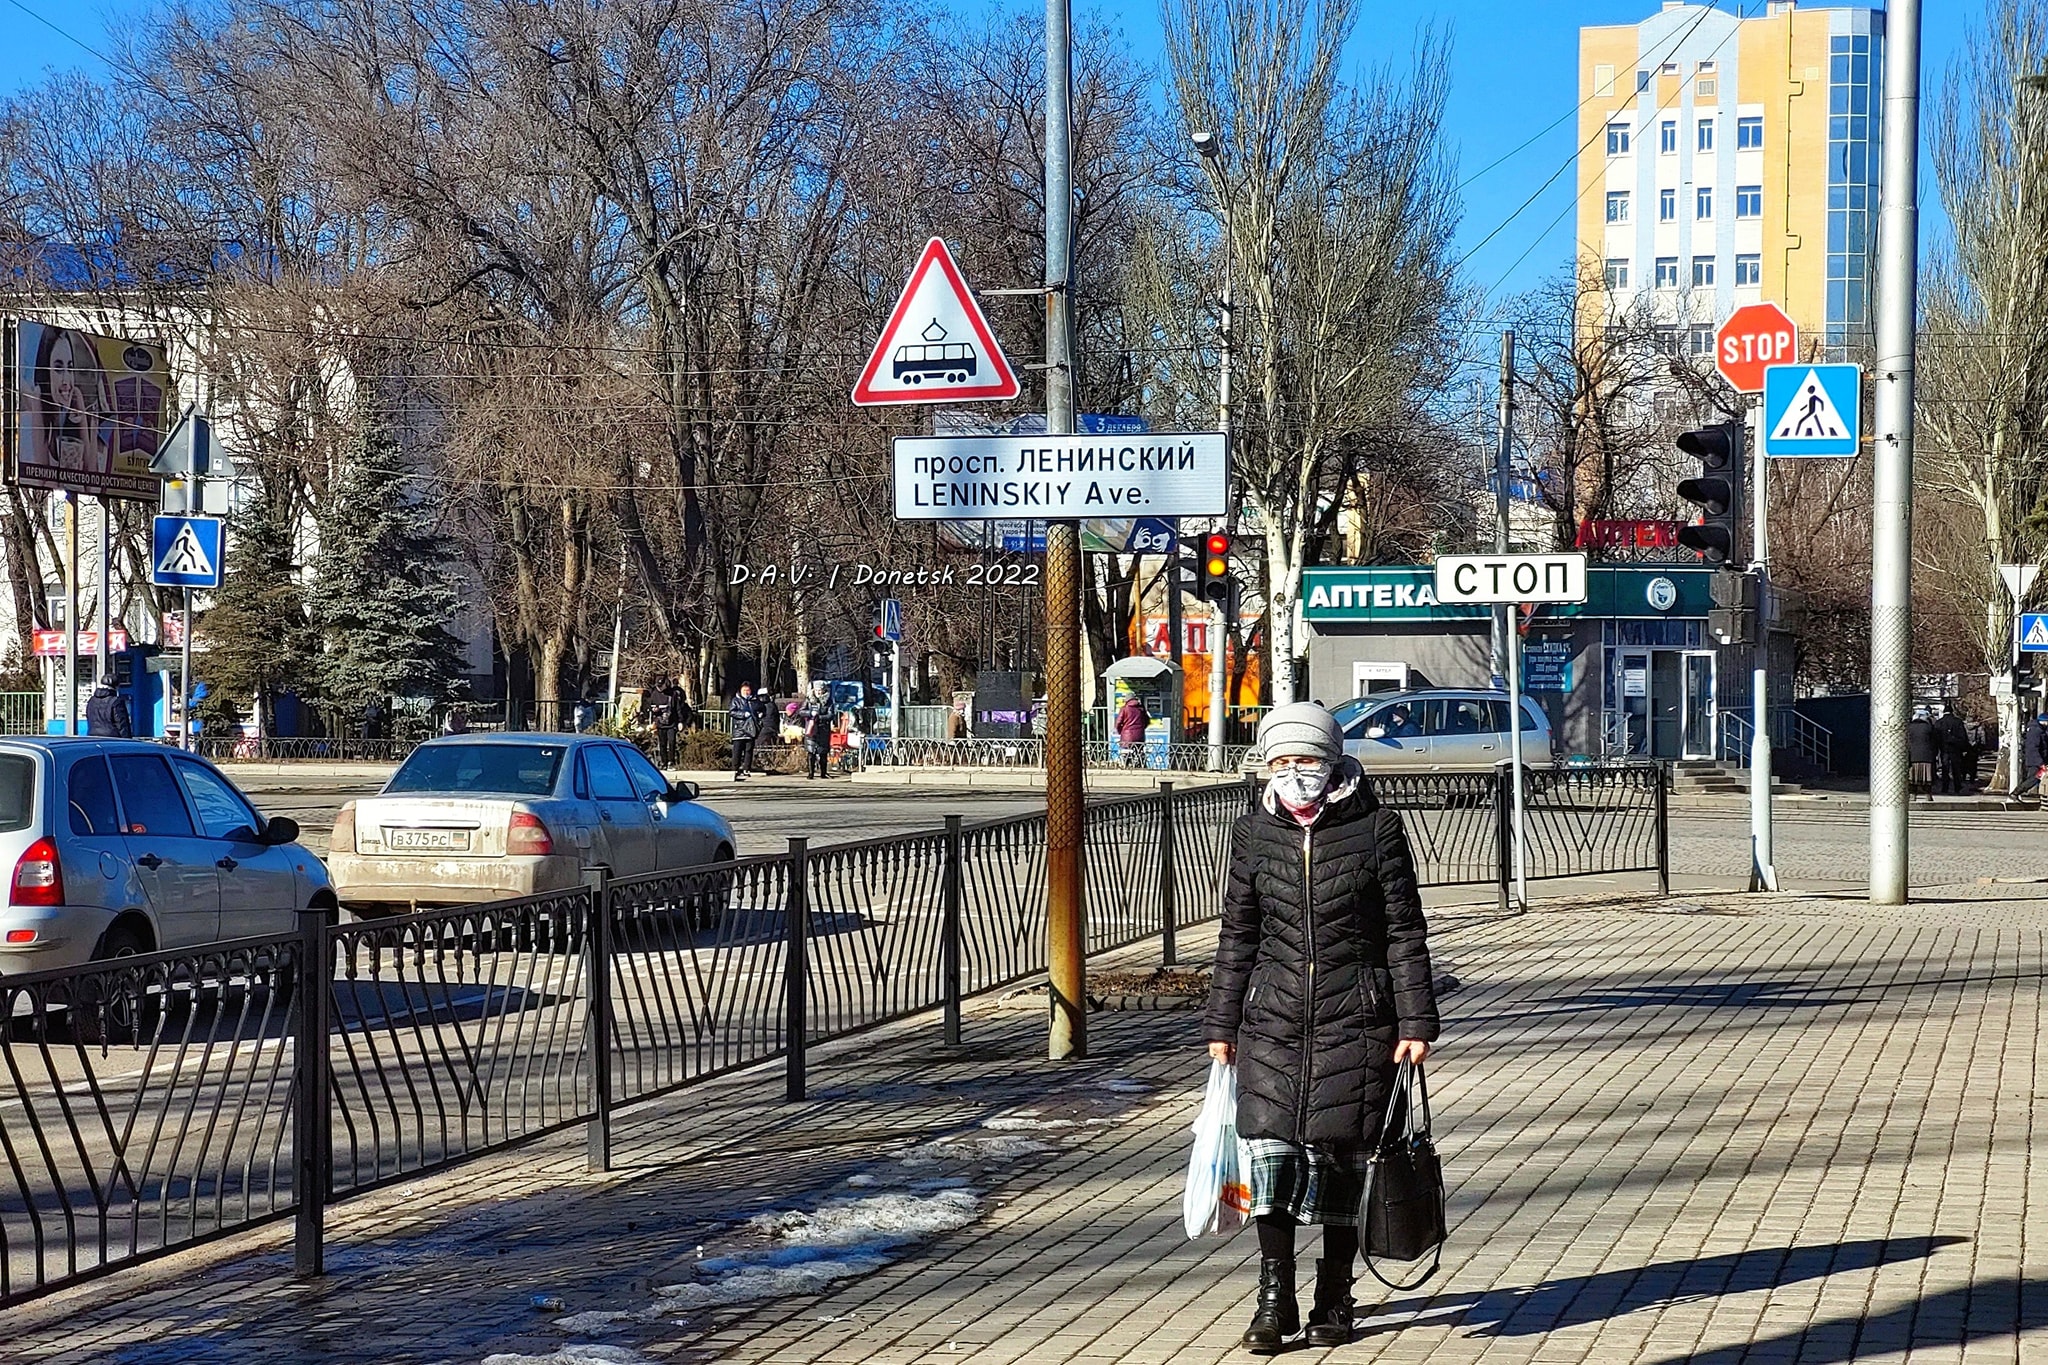 Сейчас Людей на улицах стало значительно меньше. Фото: https://www.facebook.com/YevgeniyaKA